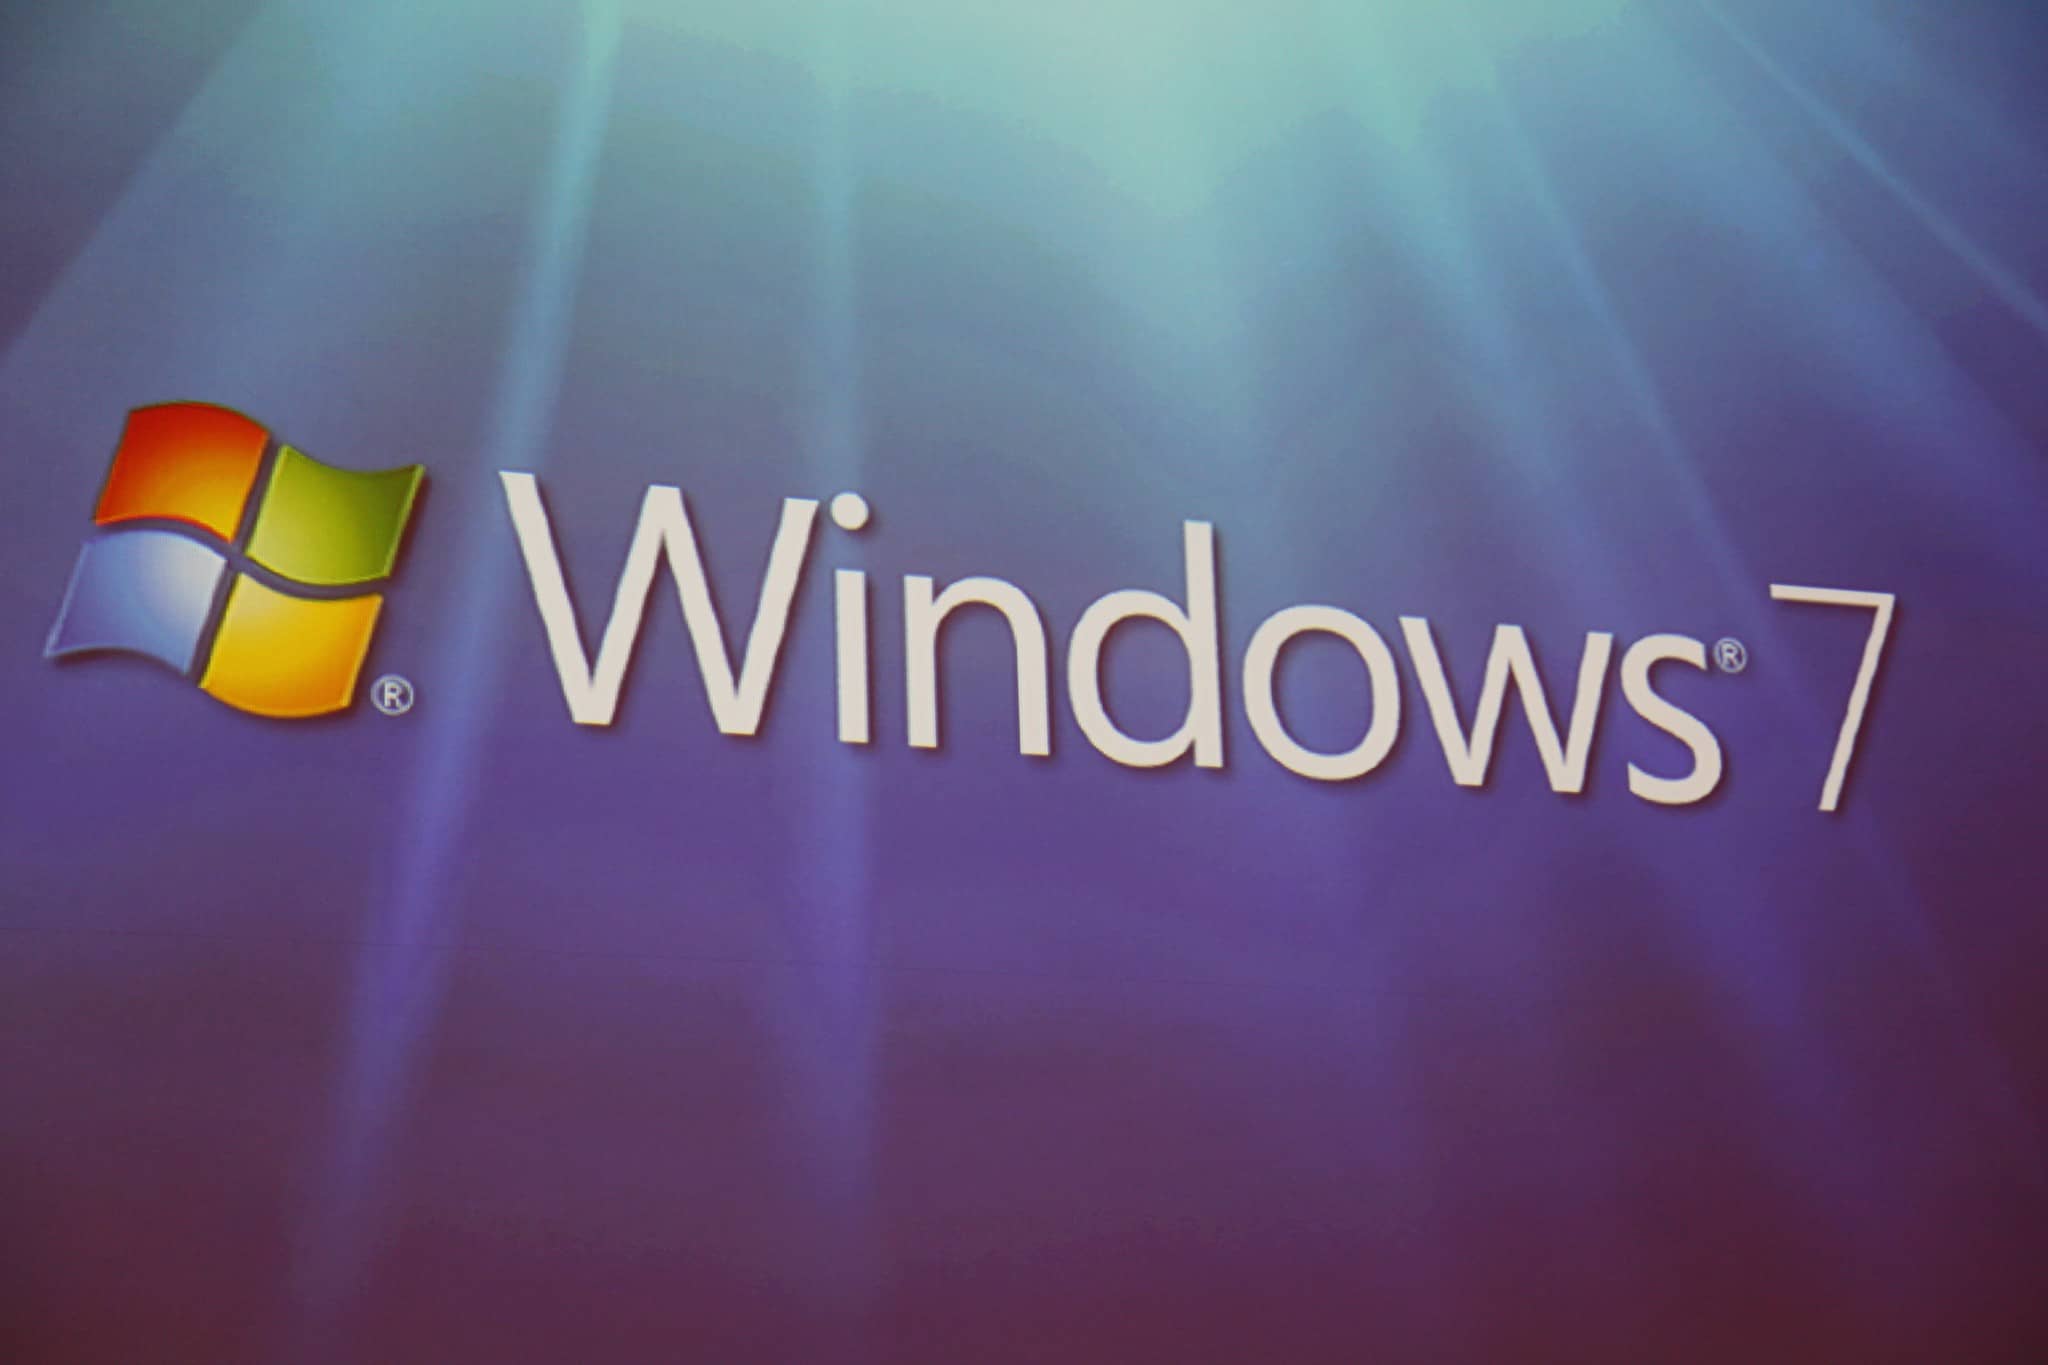 windows 7 logo on a computer screen